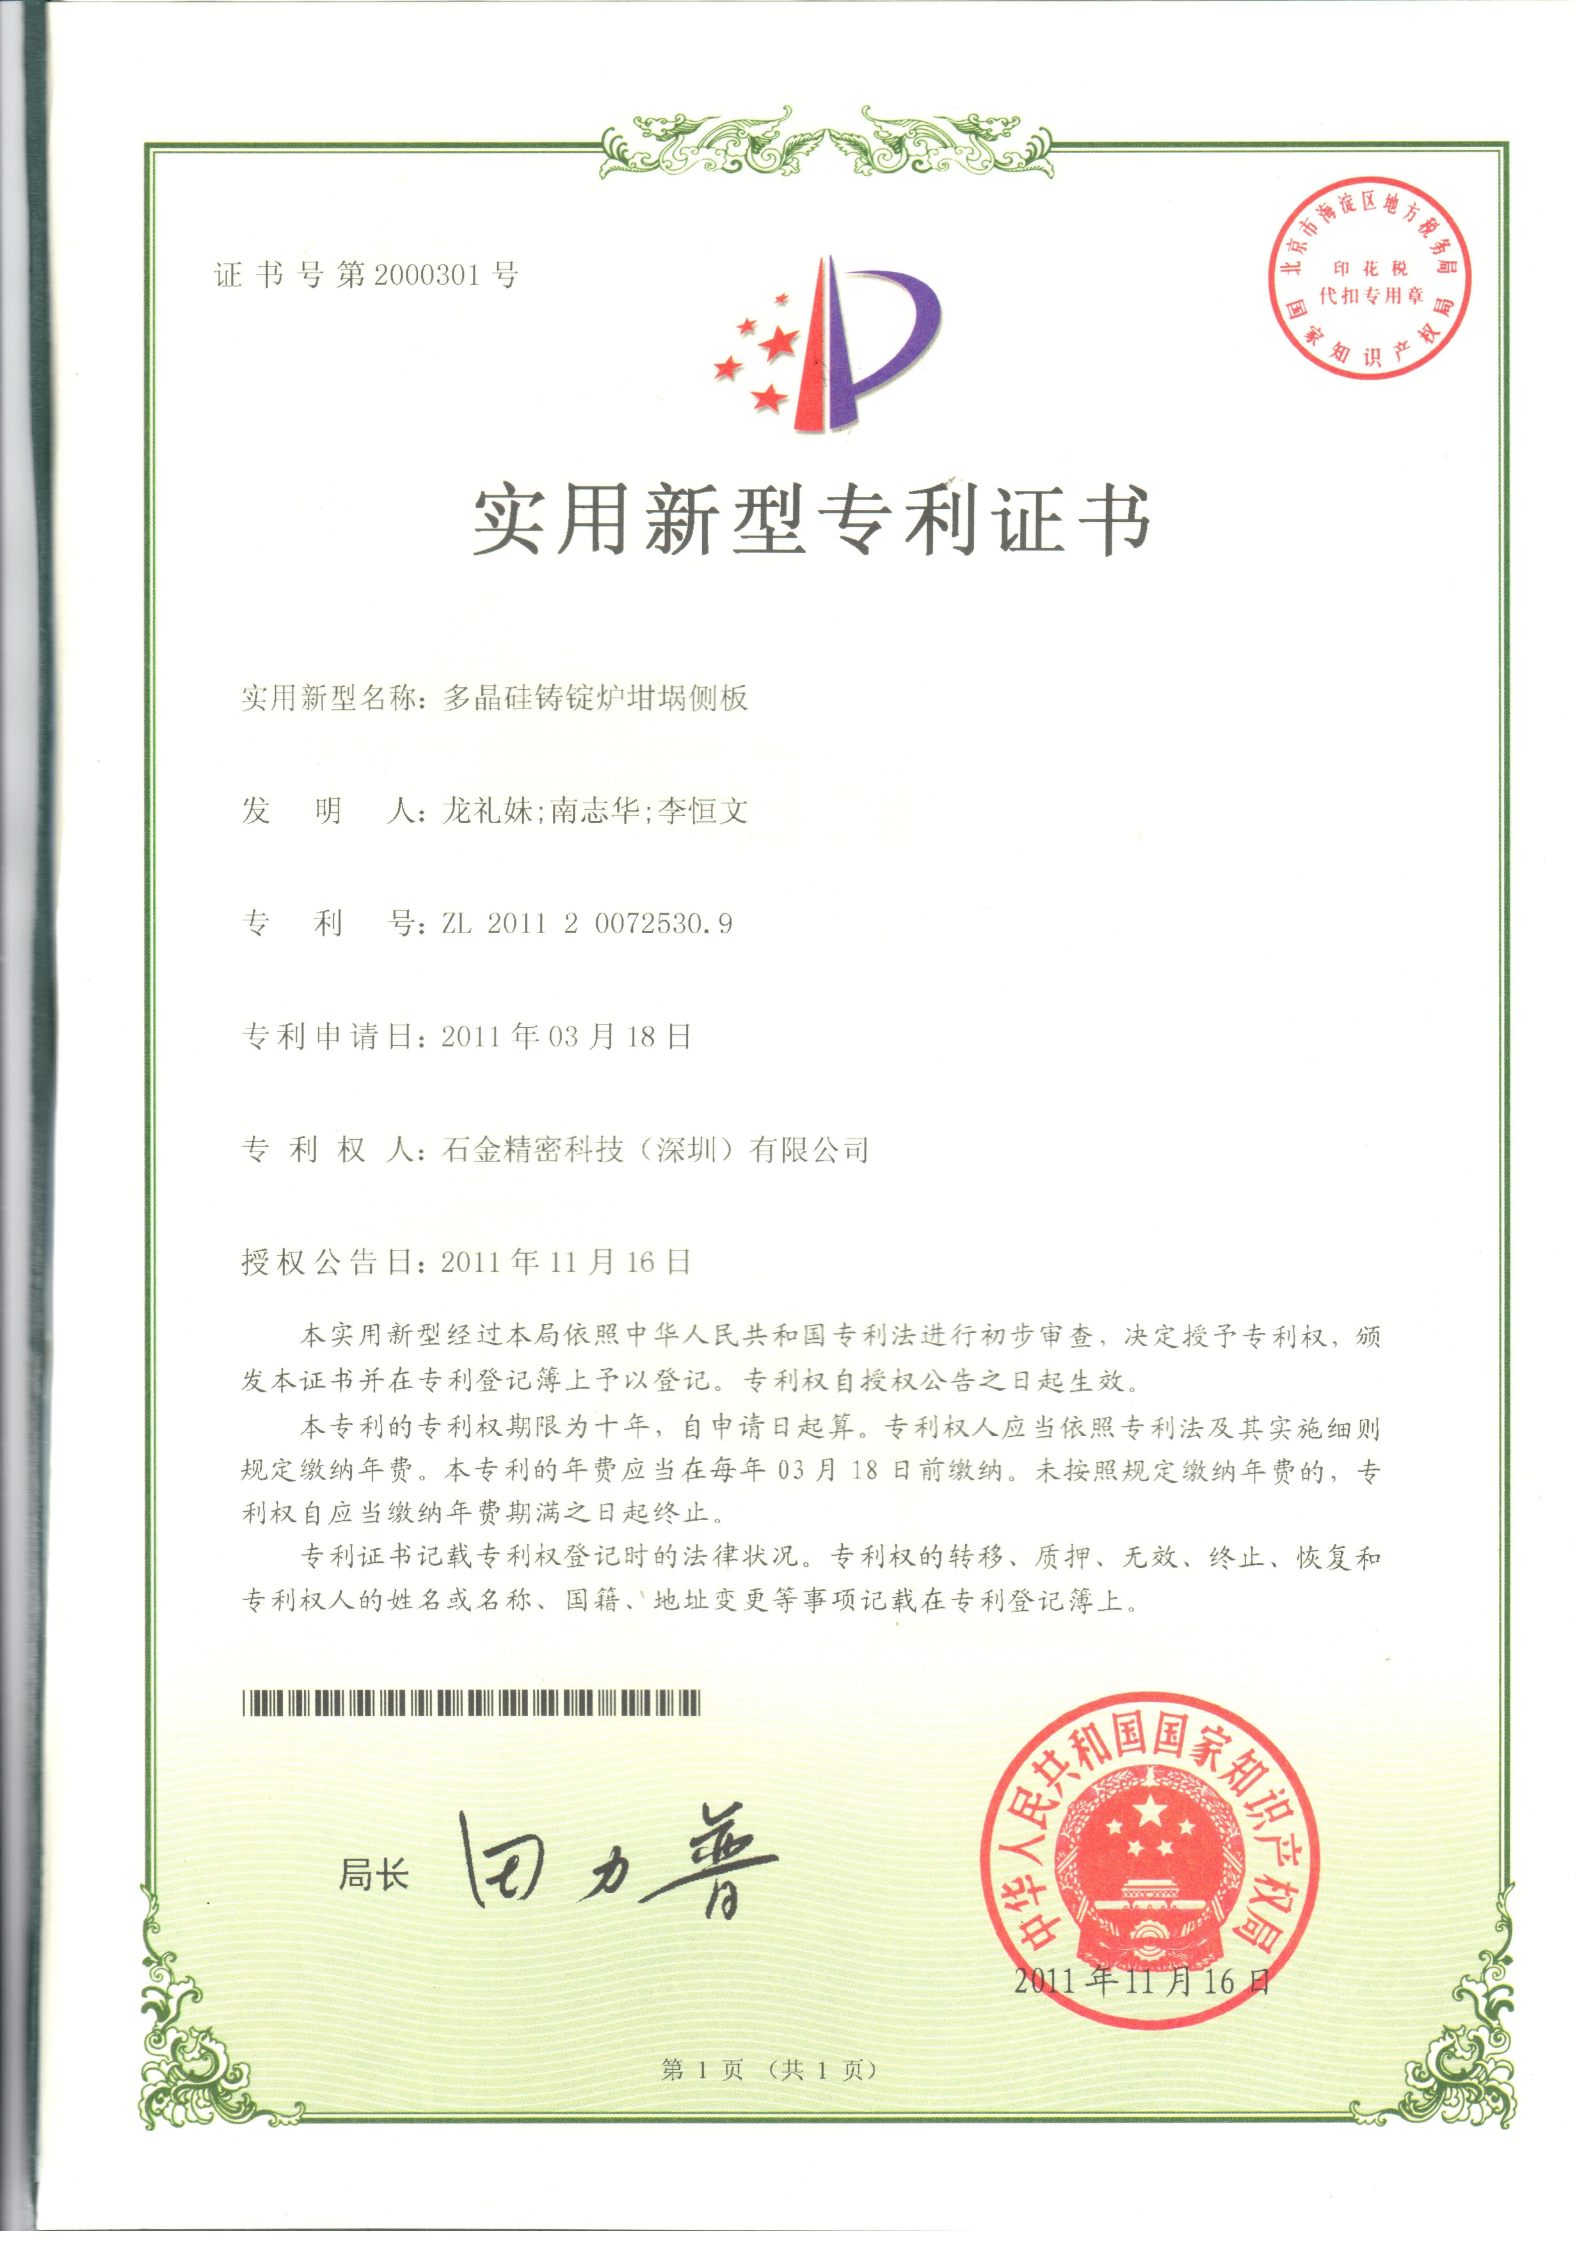 多(duō)晶硅铸锭炉钳埚侧板证书